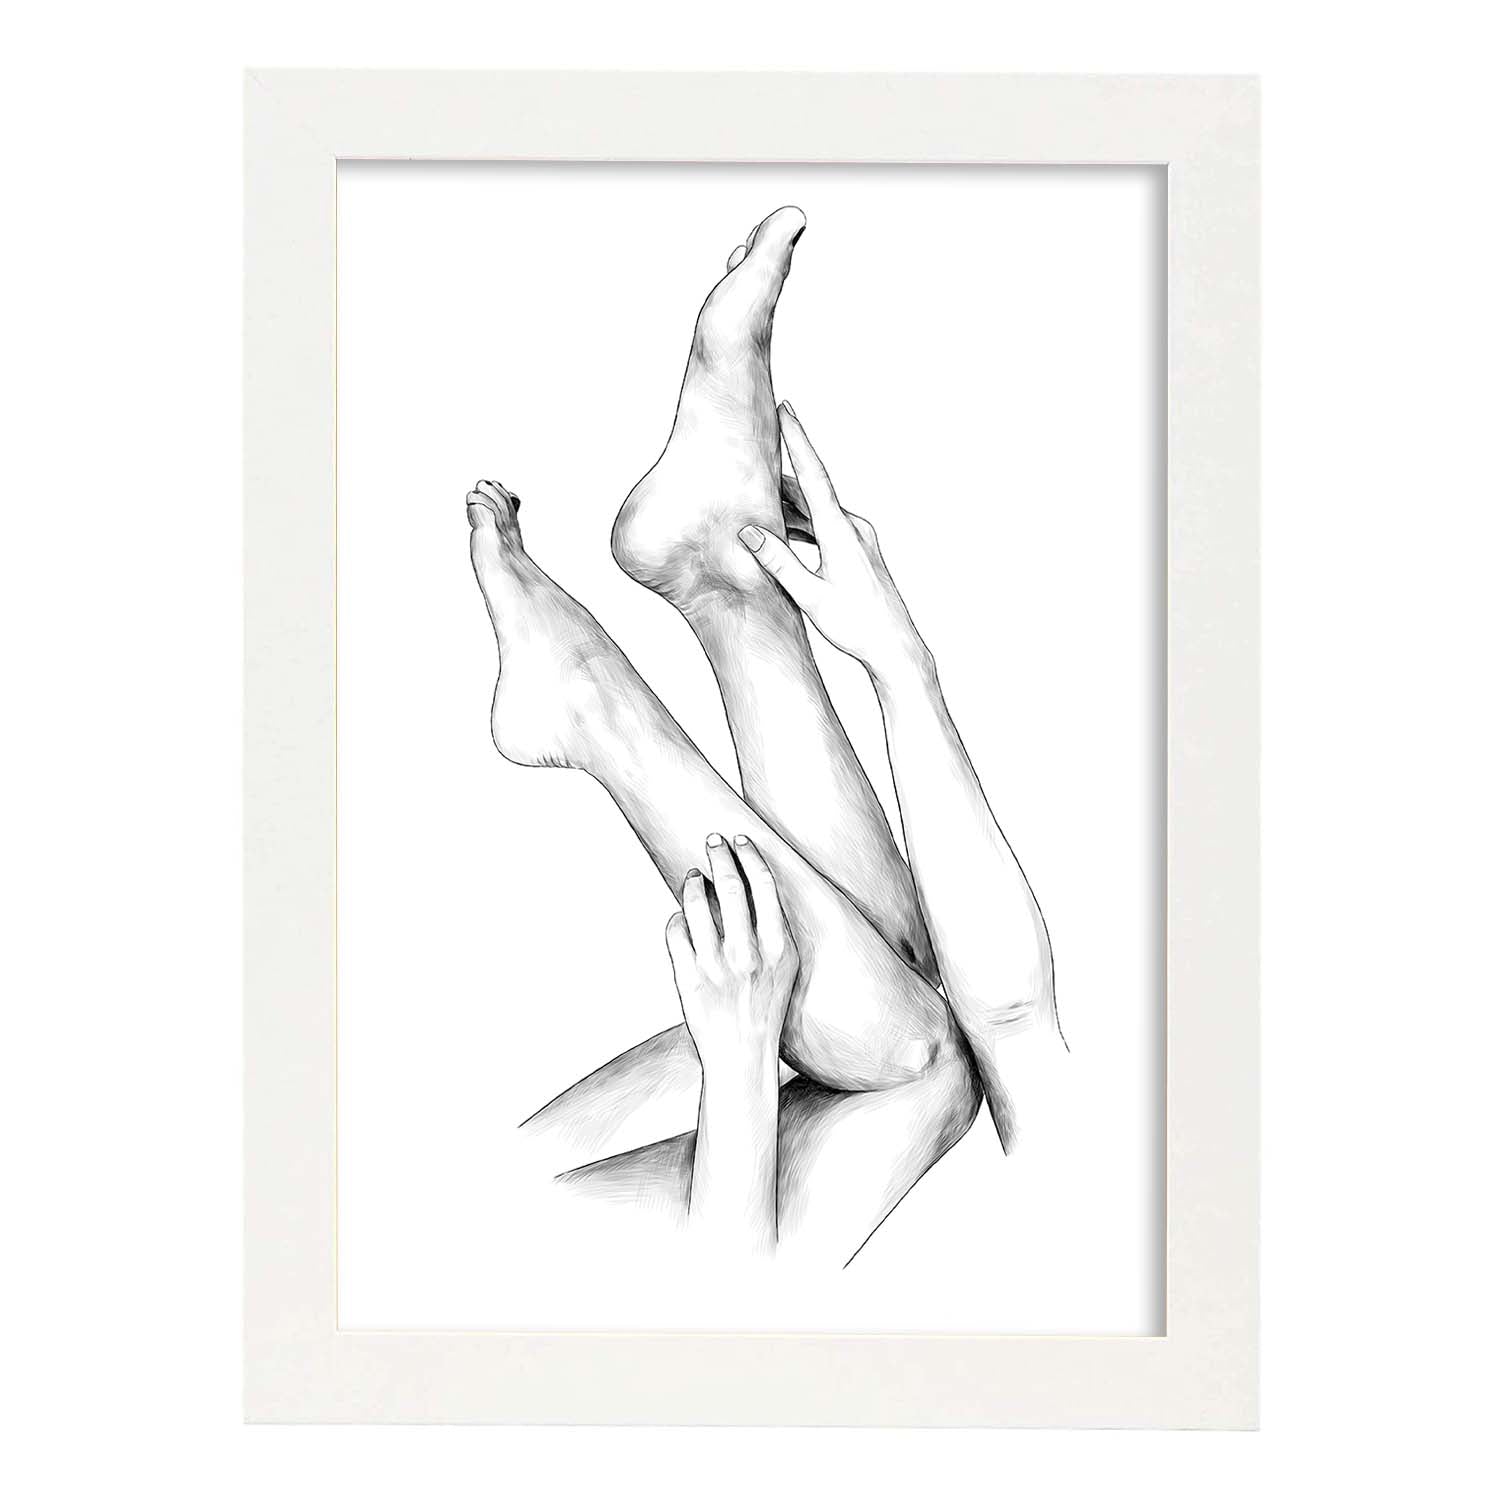 Posters eróticos. Lámina Piernas 2 dibujada con imágenes sensuales del cuerpo femenino.-Artwork-Nacnic-A4-Marco Blanco-Nacnic Estudio SL